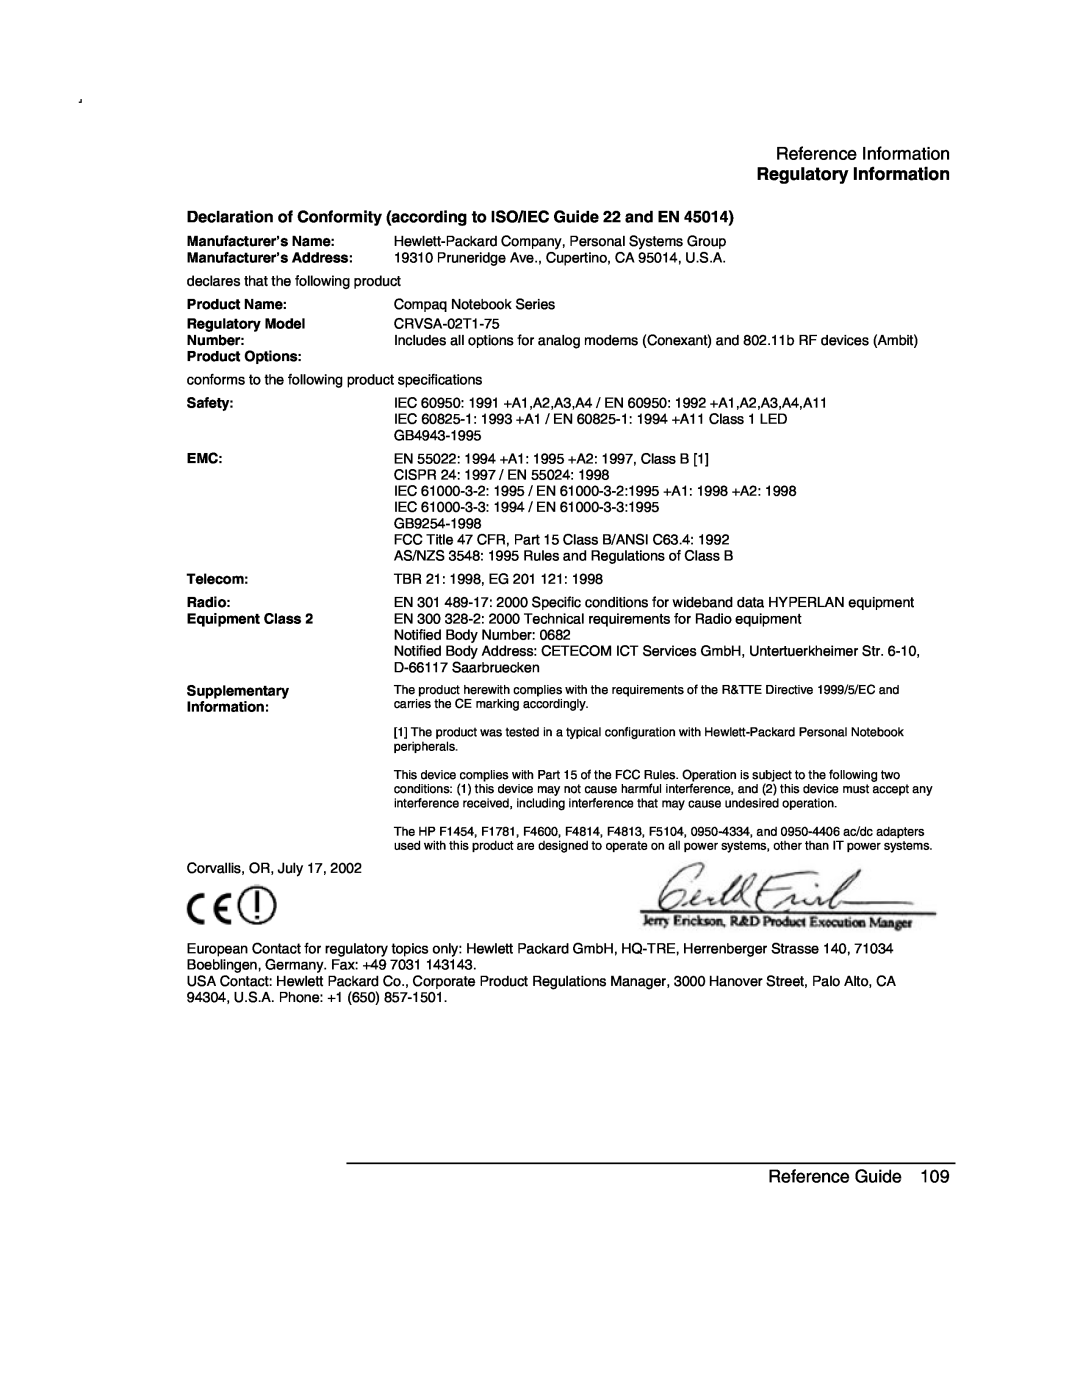 Compaq AMC20493-KT5 Reference Information, Regulatory Information, Reference Guide, Product Name, Regulatory Model, Number 